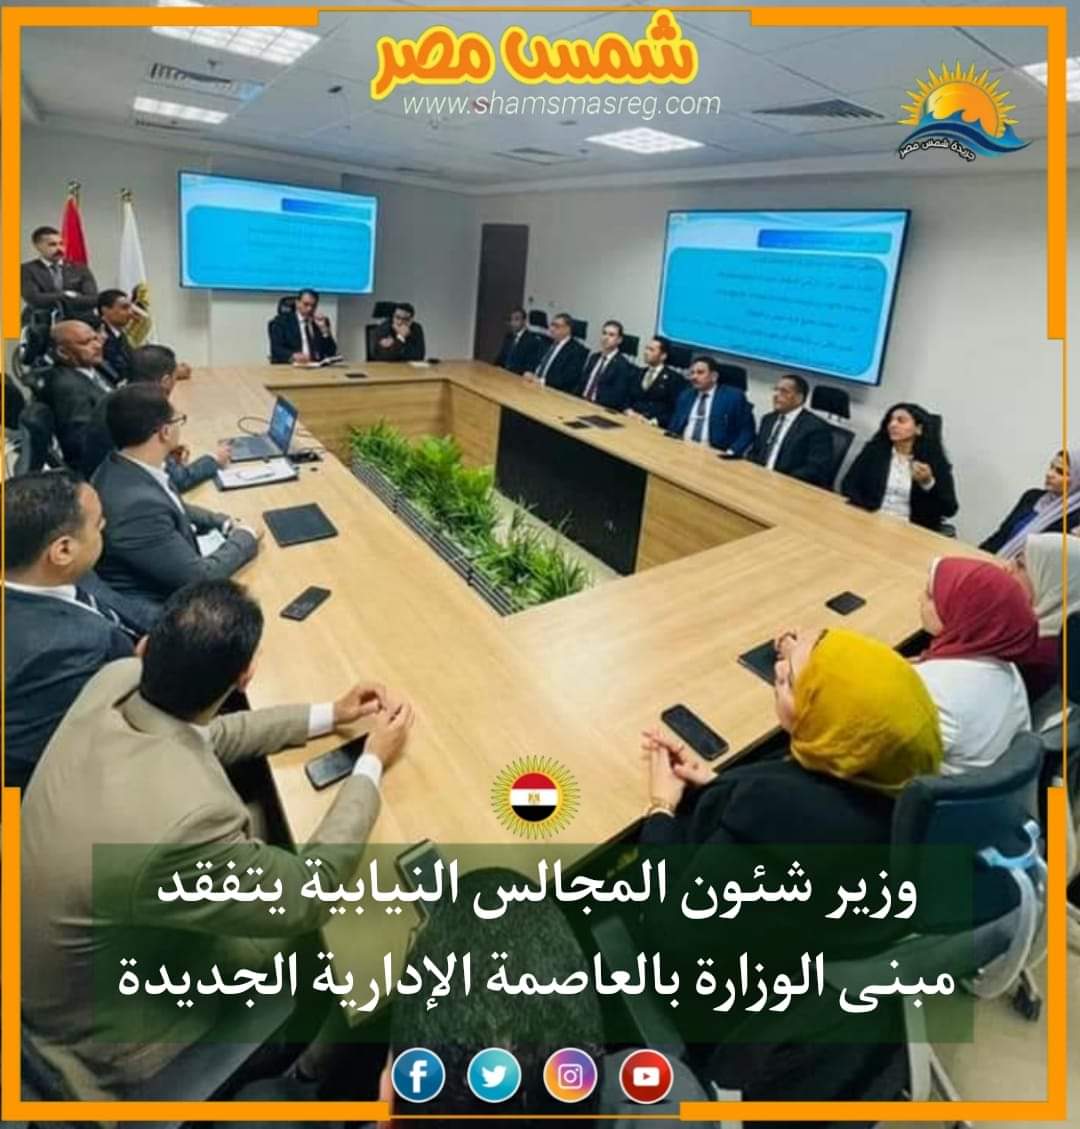 |شمس مصر|.. وزير شئون المجالس النيابية يتفقد مبنى الوزارة بالعاصمة الإدارية الجديدة